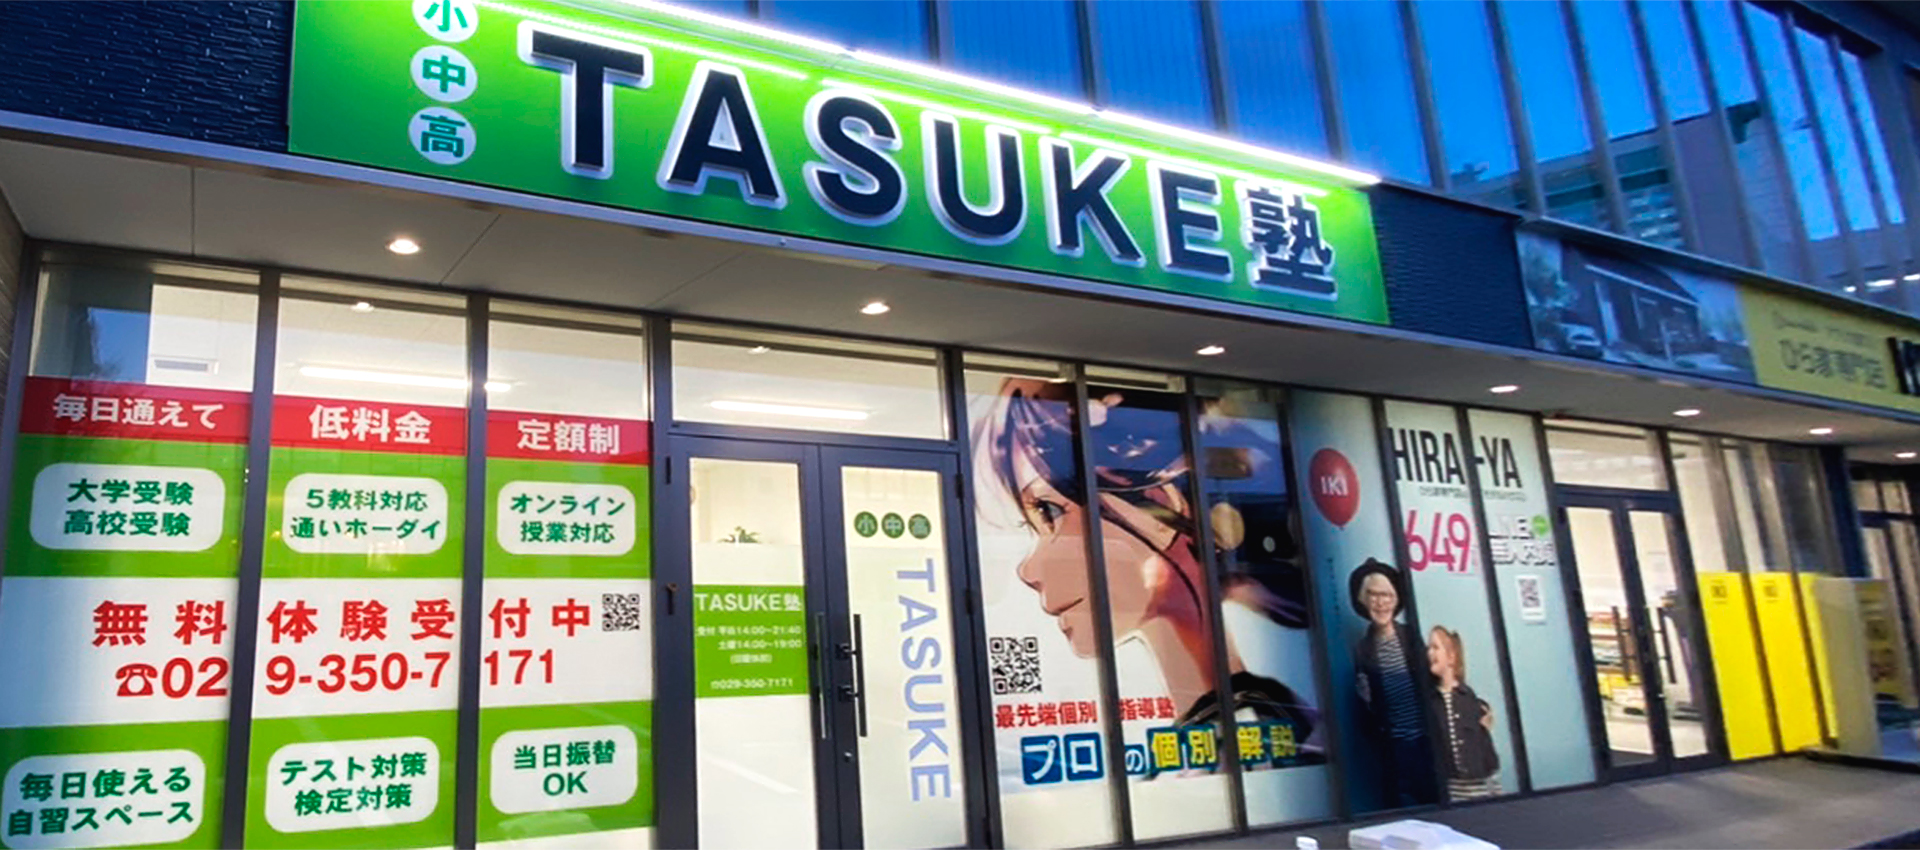 TASUKE塾水戸県庁前校へのアクセス情報